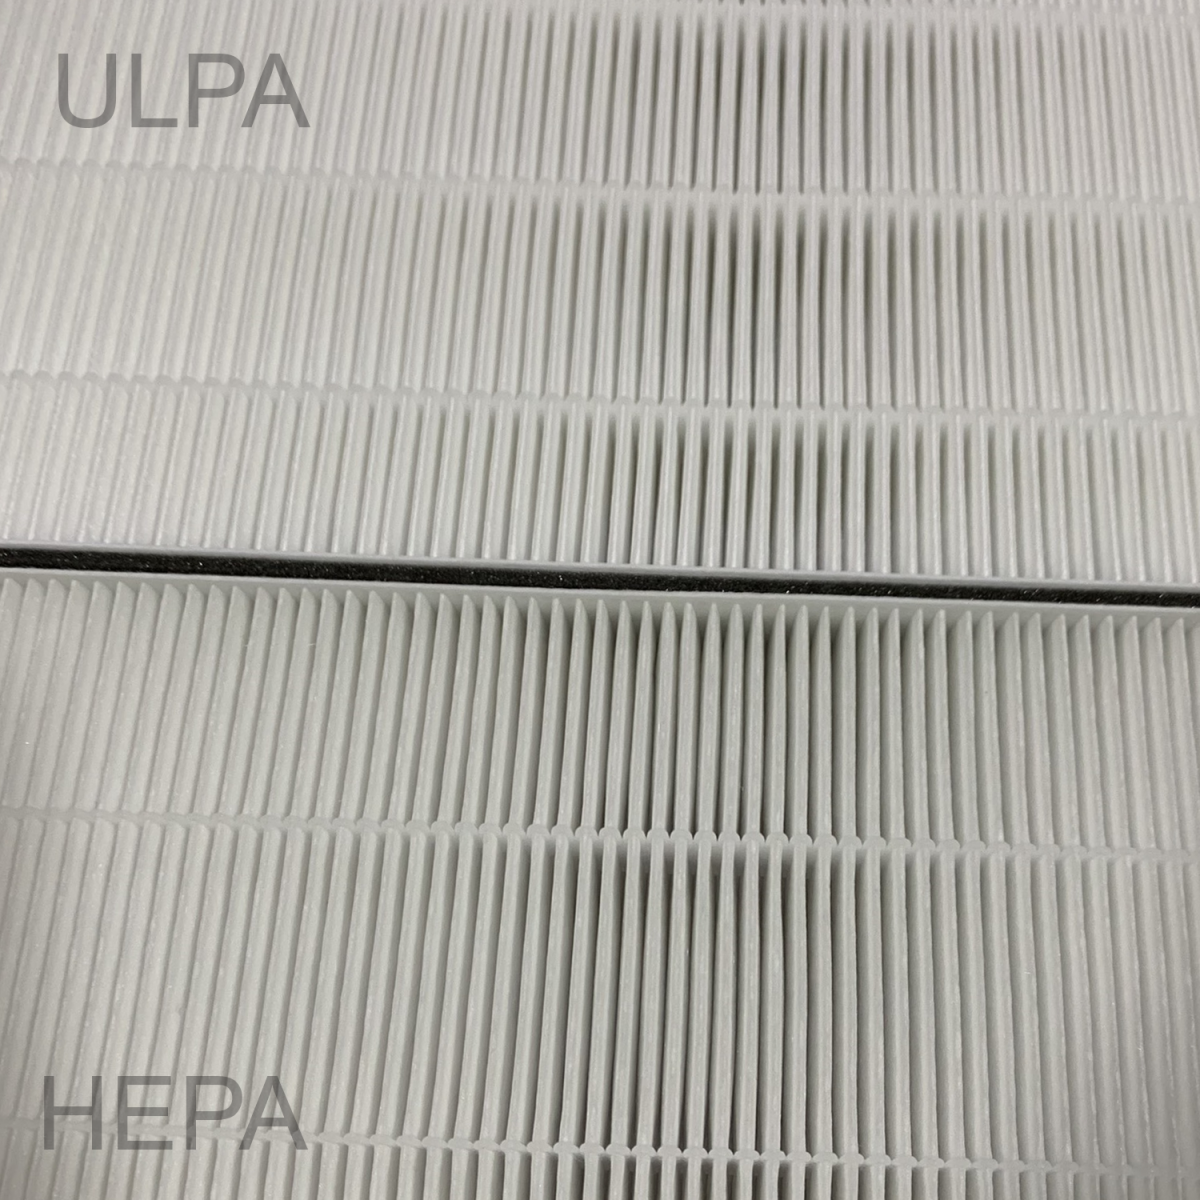 Bộ lọc ULPA có kết cấu dày dặn và nhiều lớp dệt hơn HEPA